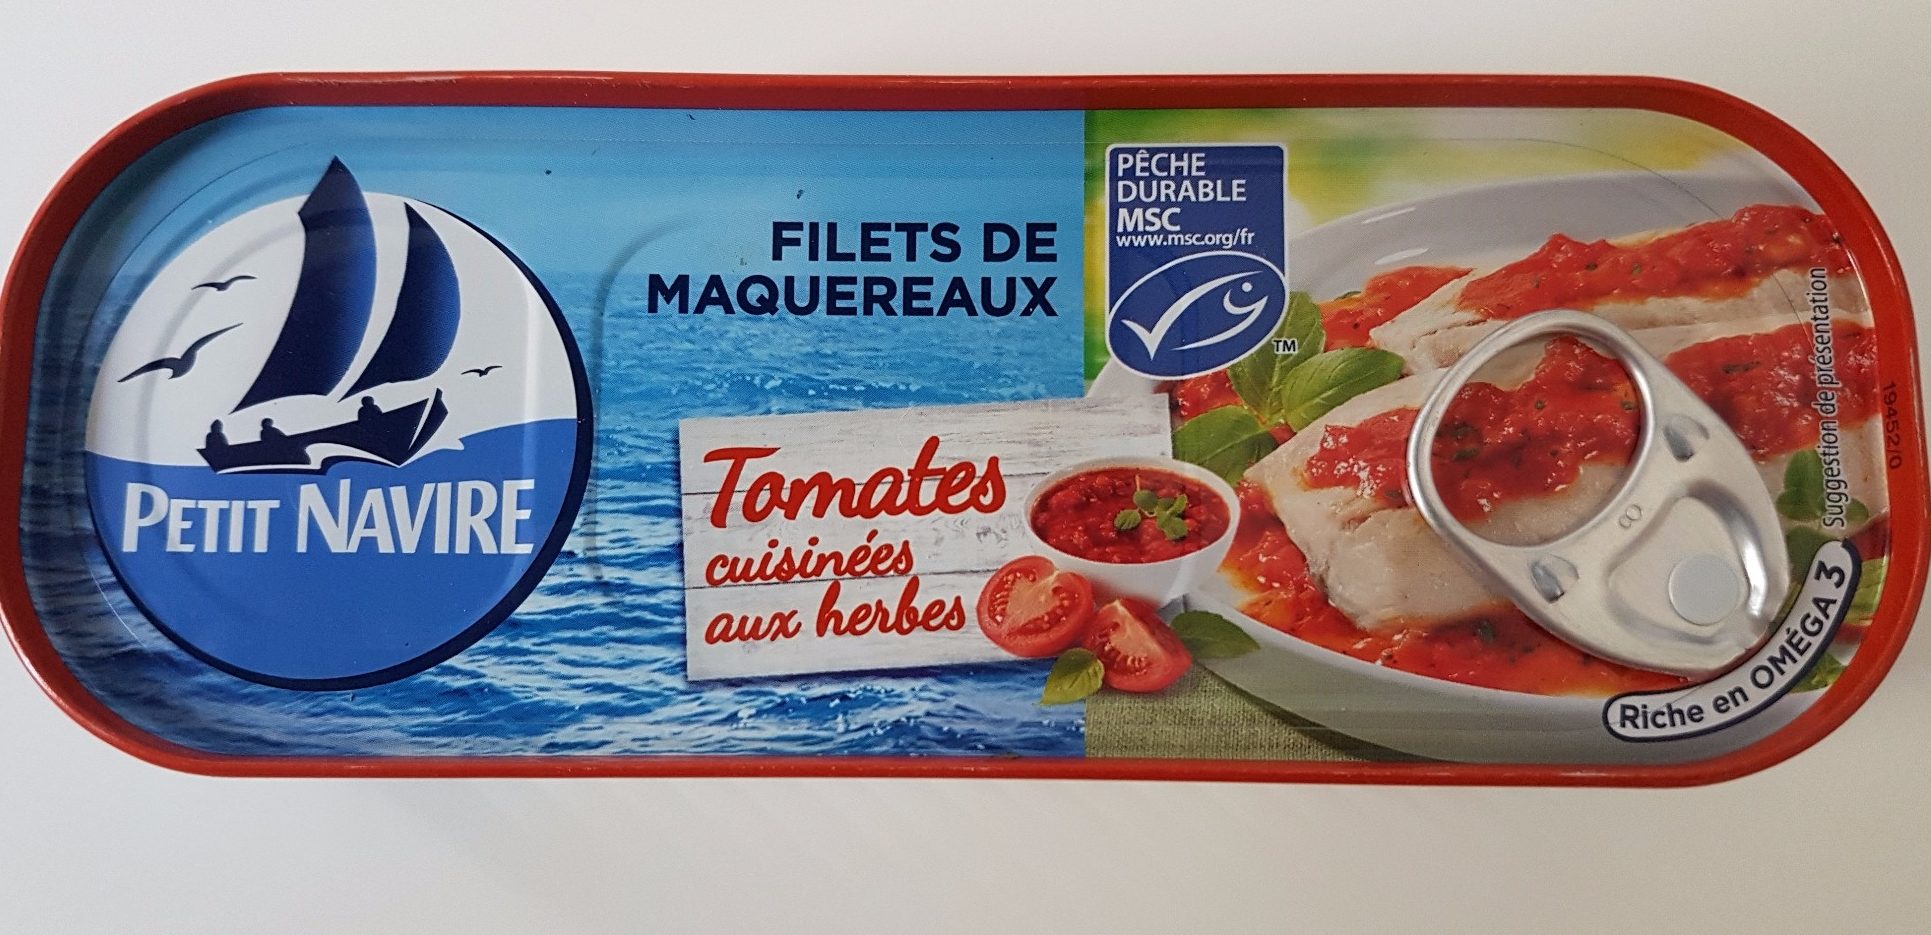 Filet de Maquereaux - Tomates et herbes - 製品 - fr